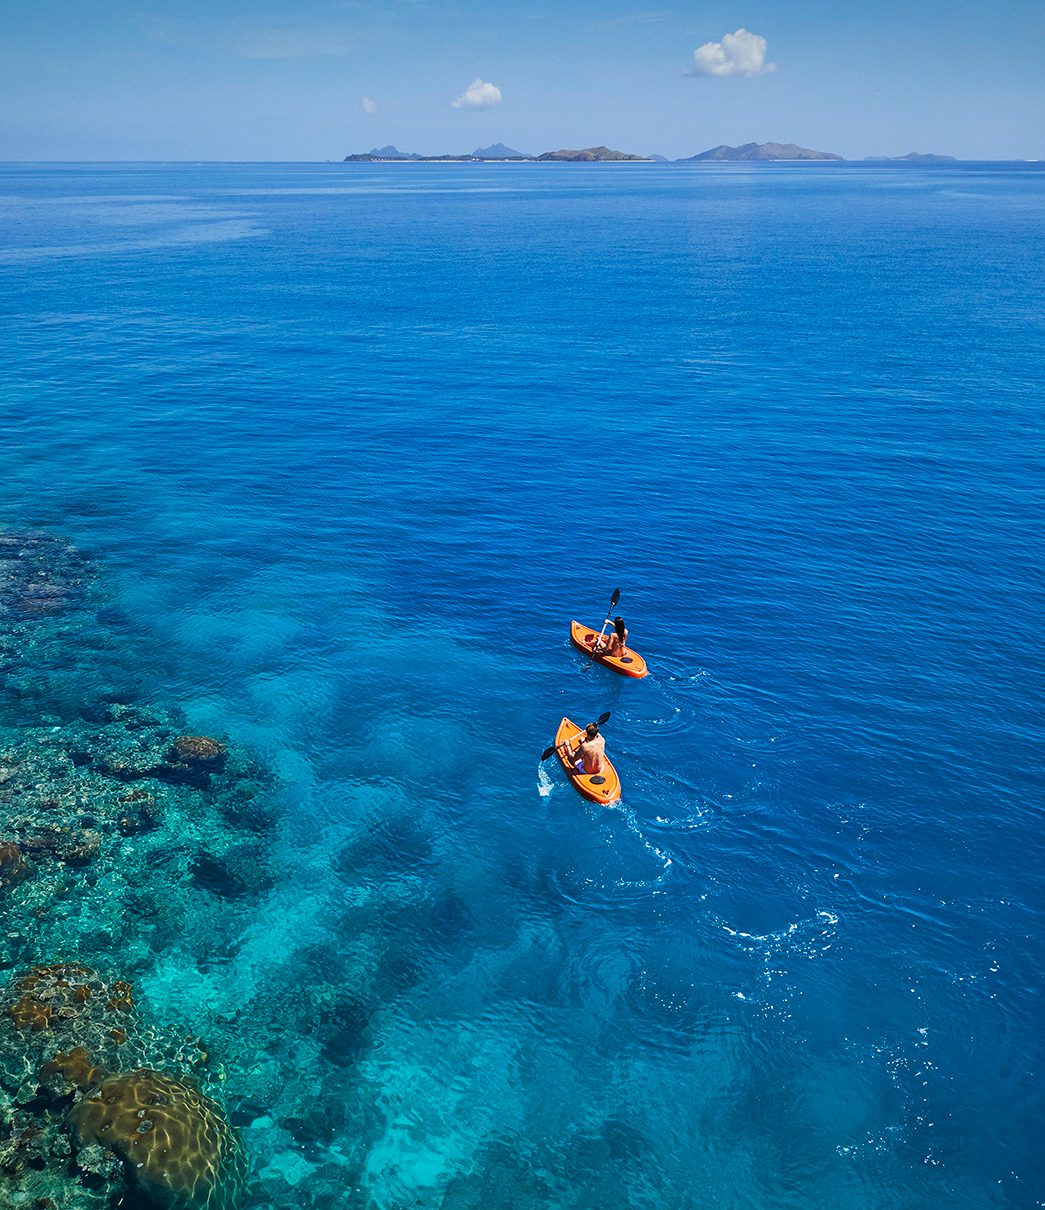 Reef edge Kayak, image by Tourism Fiji